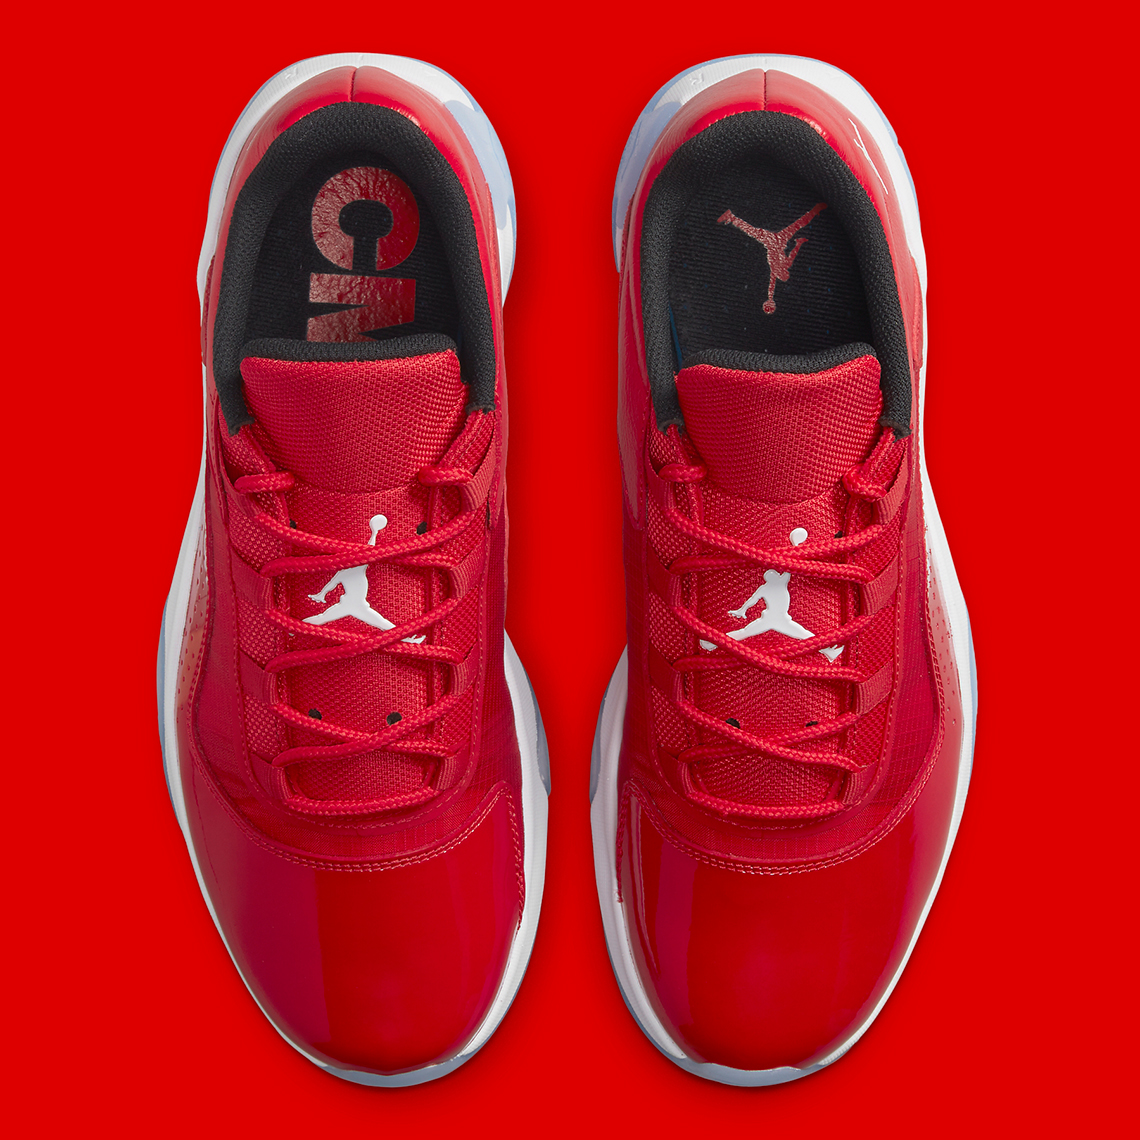 Air Jordan 11 Low University Red